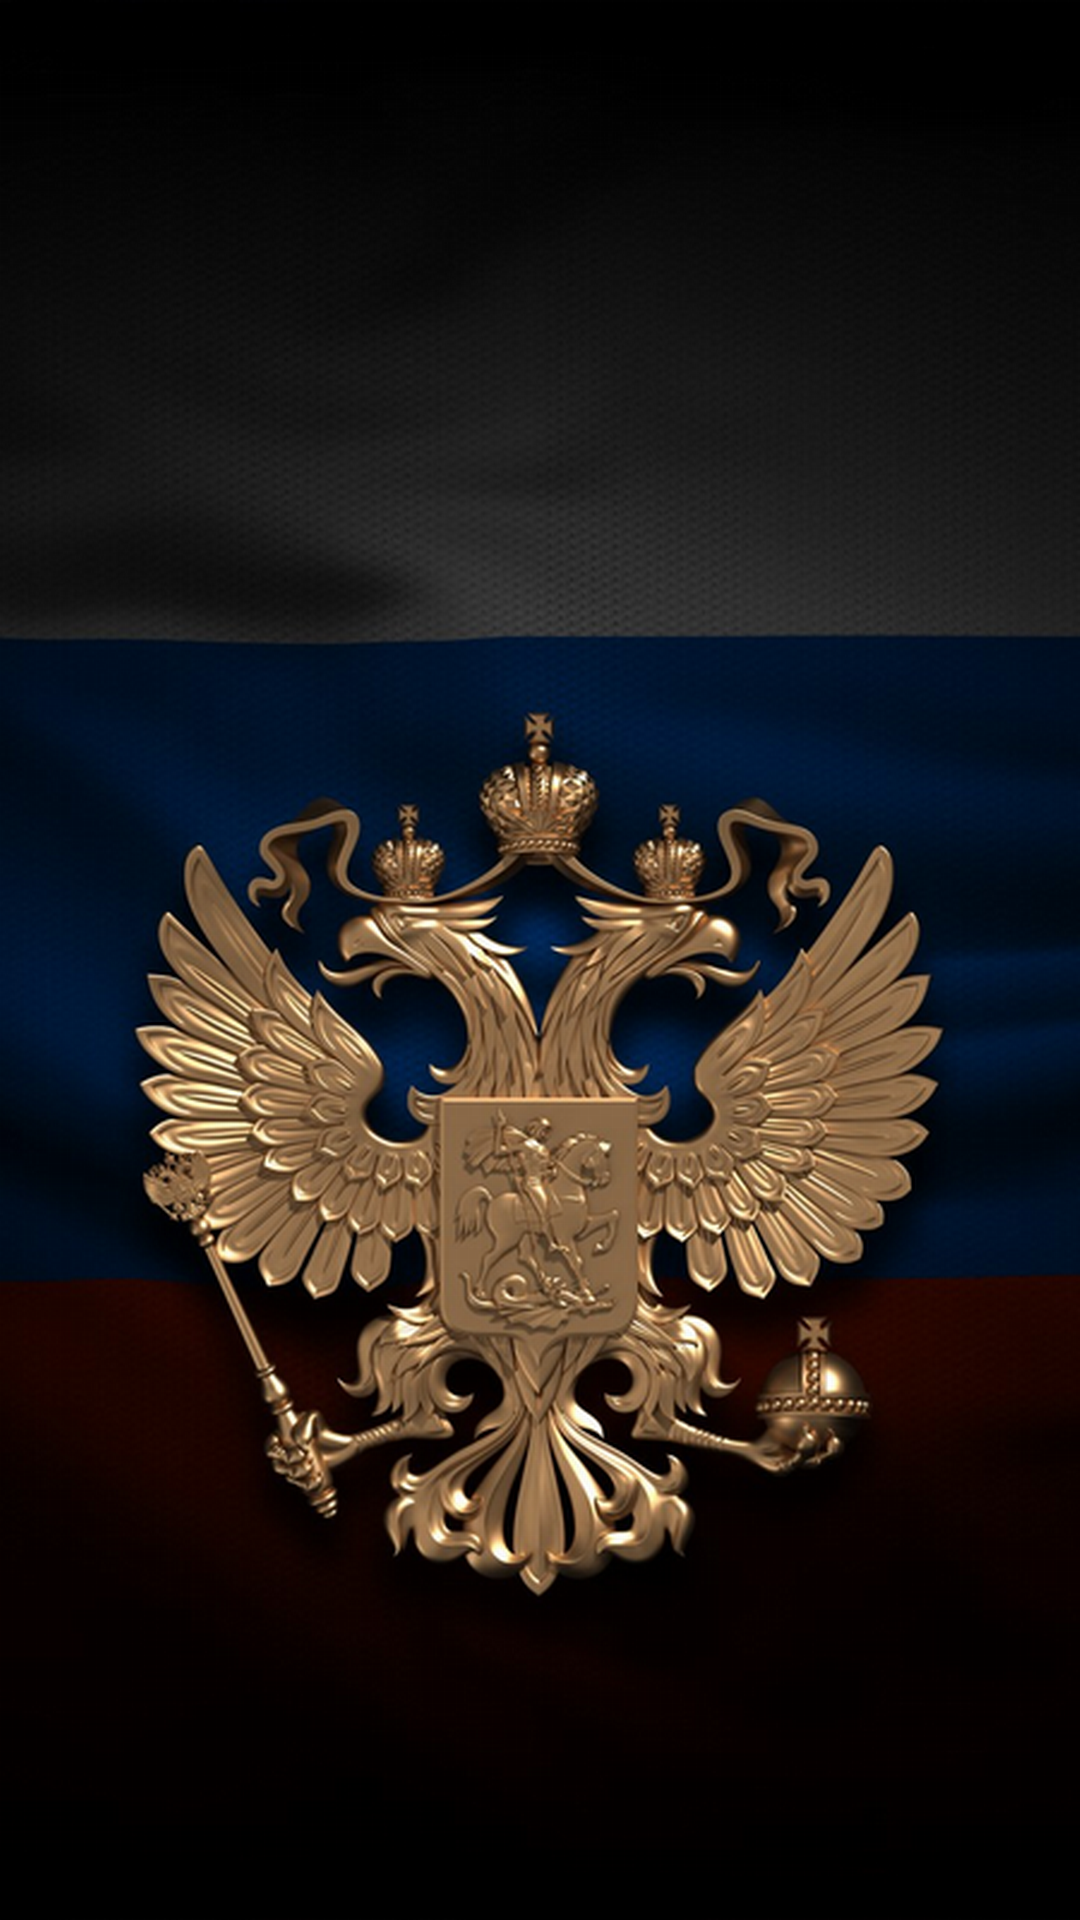 фото эмблемы россии